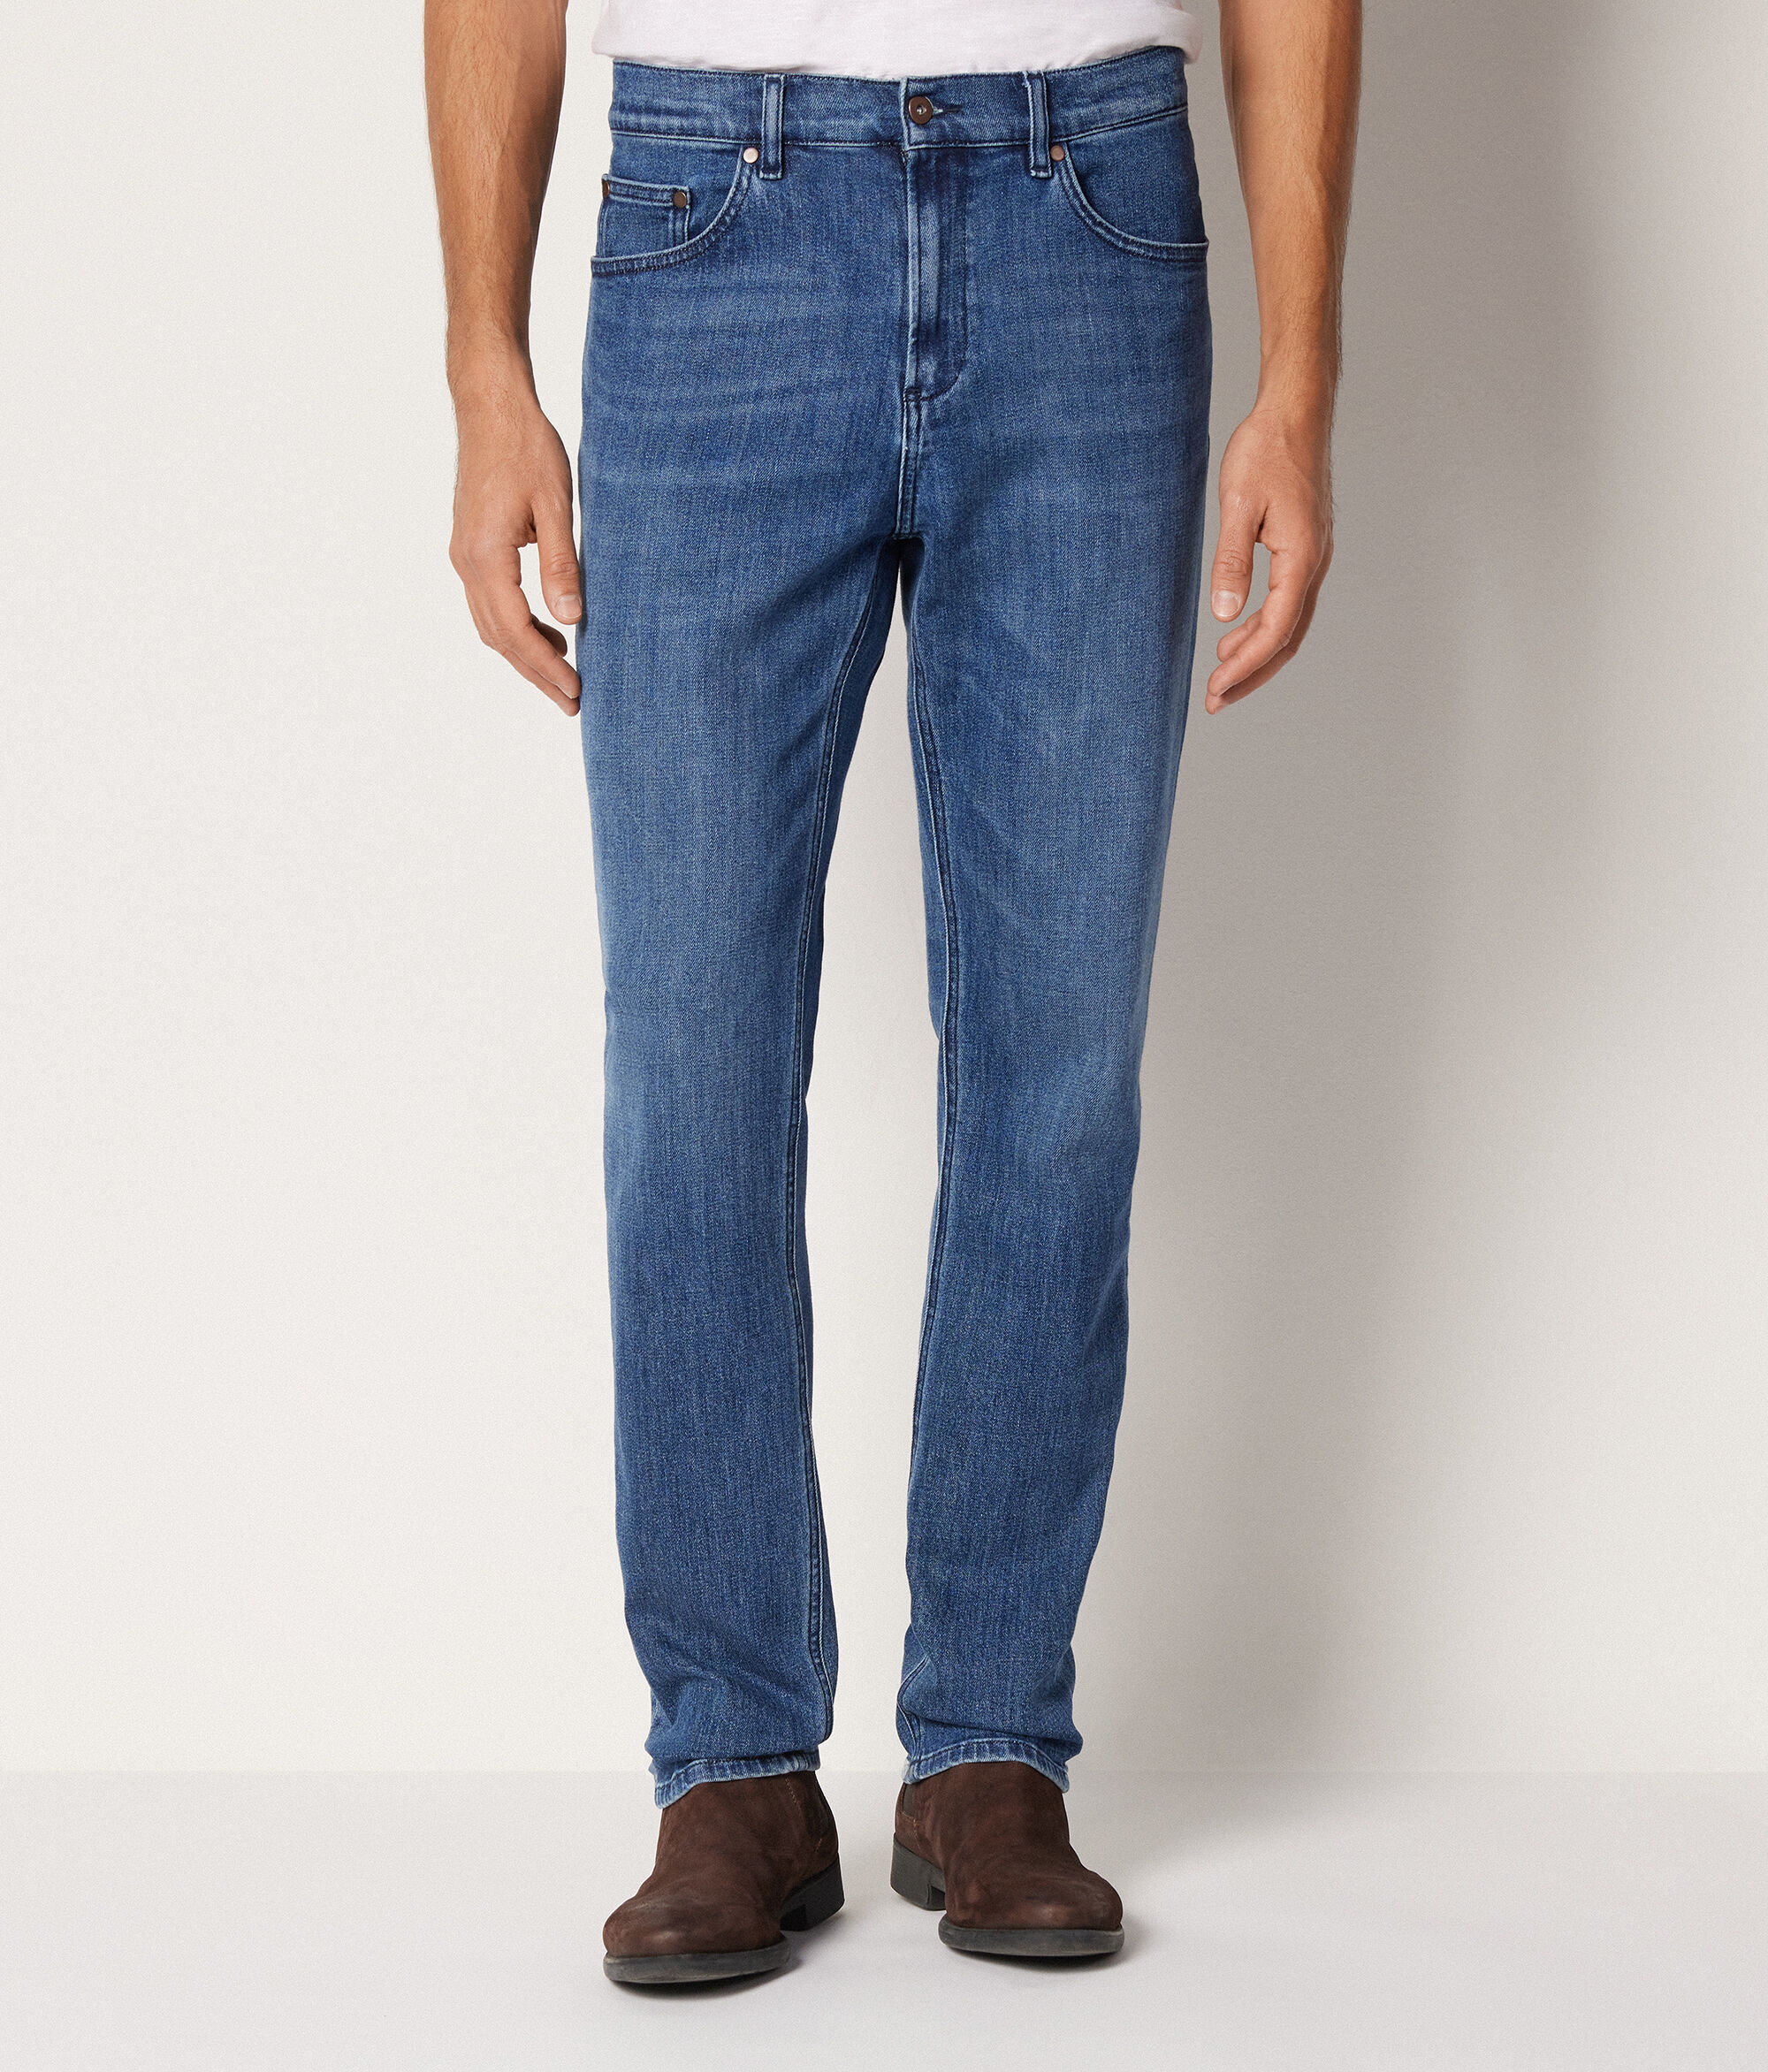 Cotton Cashmere Jeans